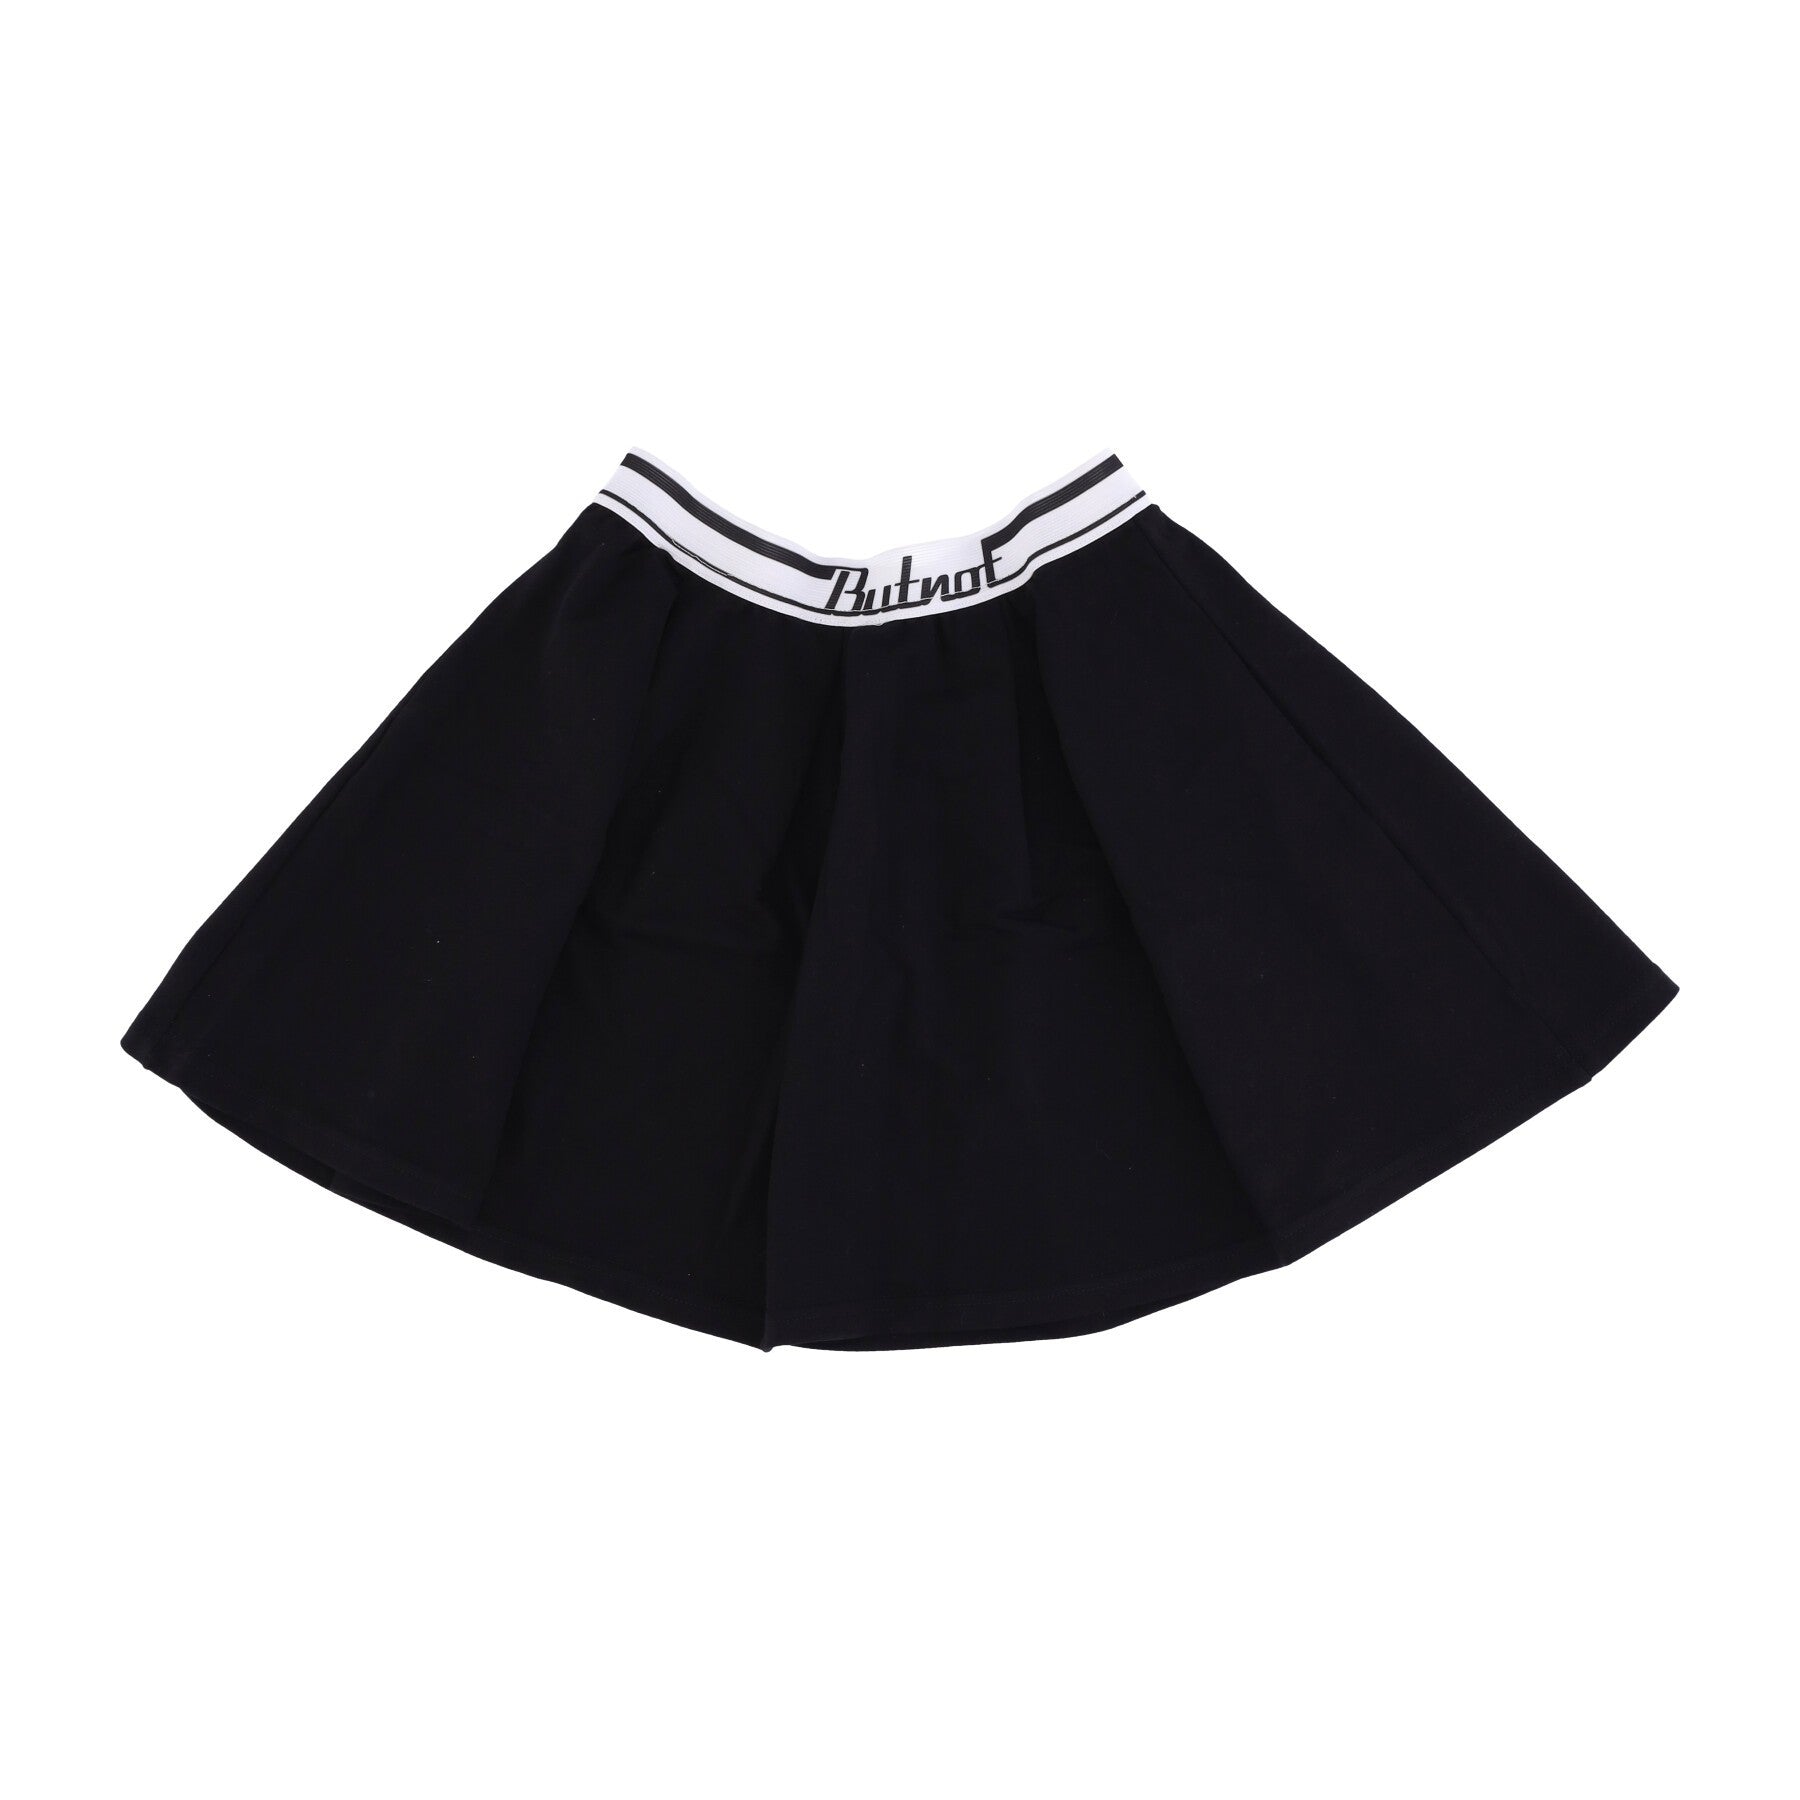 Short Skirt Women's Tennis Skirt Black